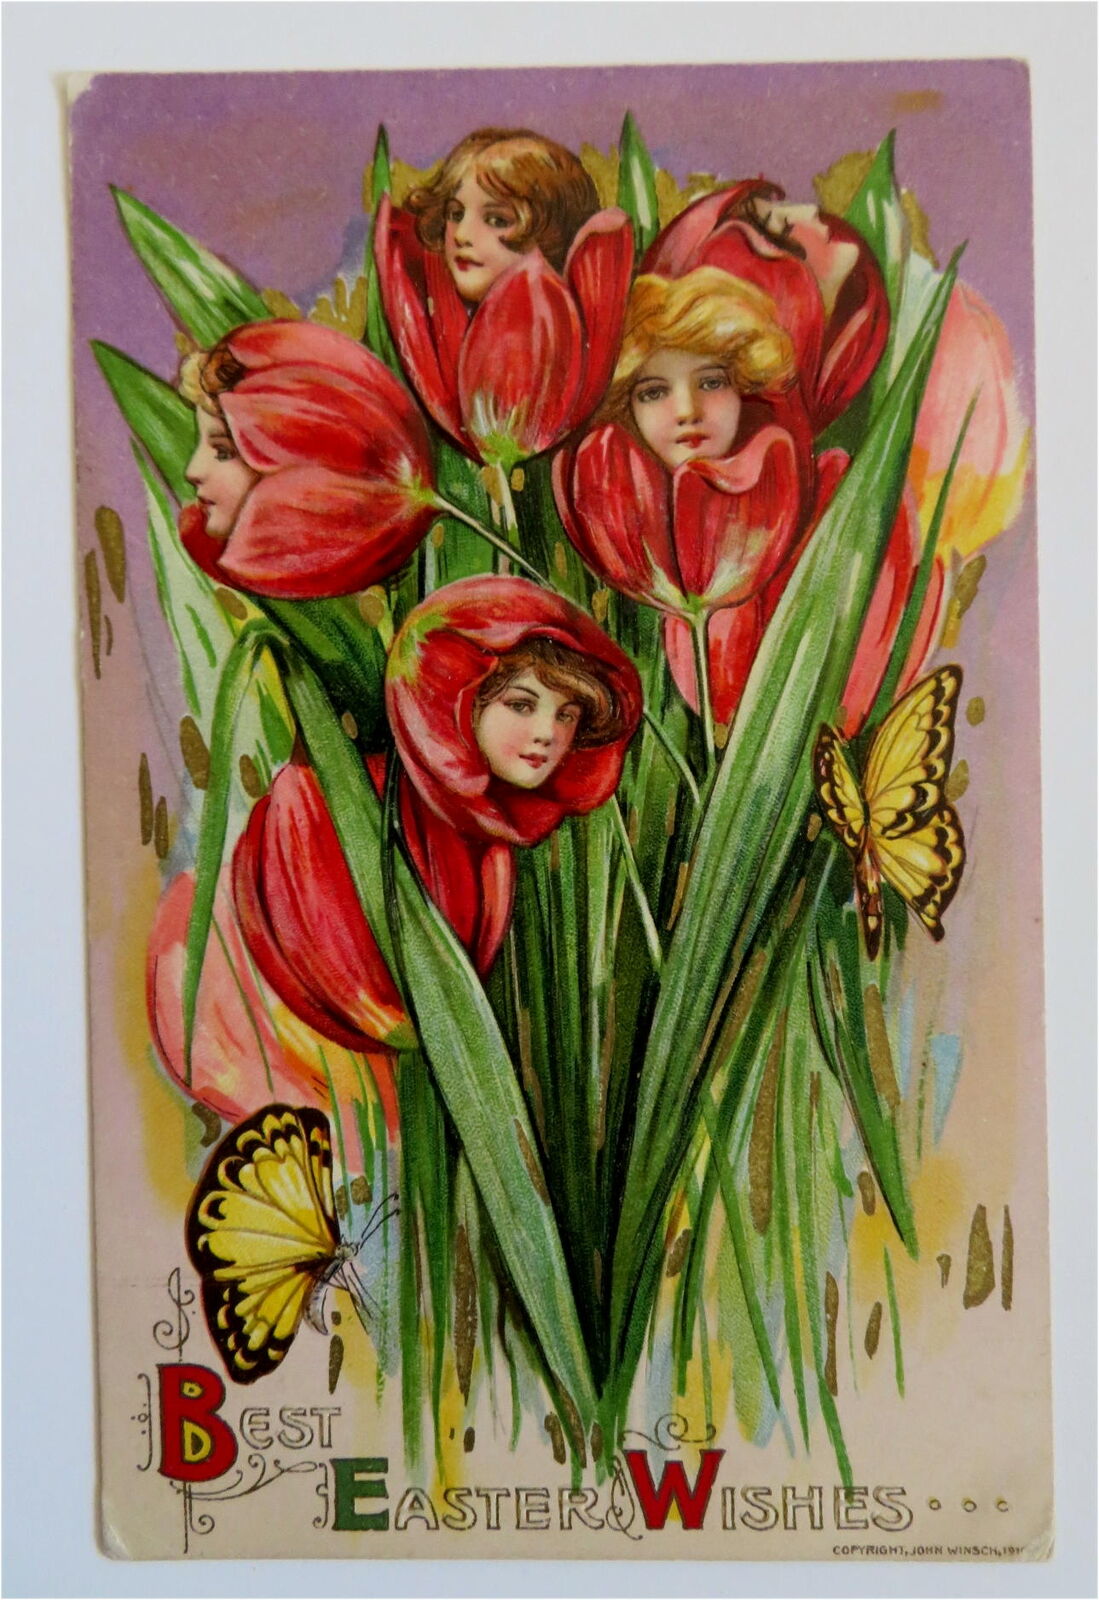 Best Easter Wishes Flowers Butterflies c. 1913 Winsch Greeting Card Postcard